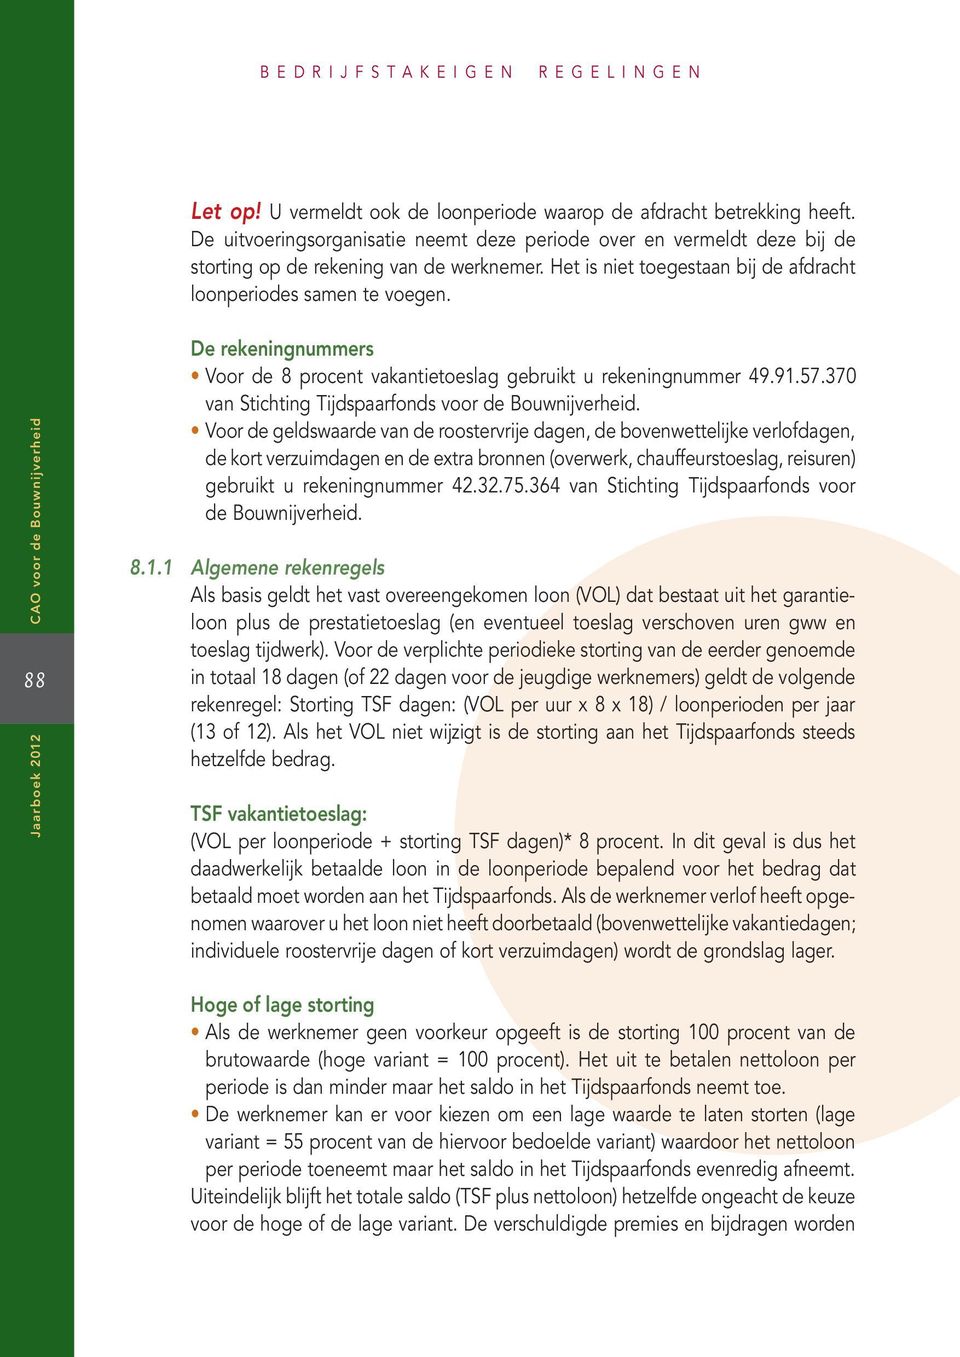 88 Jaarboek 2012 De rekeningnummers Voor de 8 procent vakantietoeslag gebruikt u rekeningnummer 49.91.57.370 van Stichting Tijdspaarfonds voor de Bouwnijverheid.